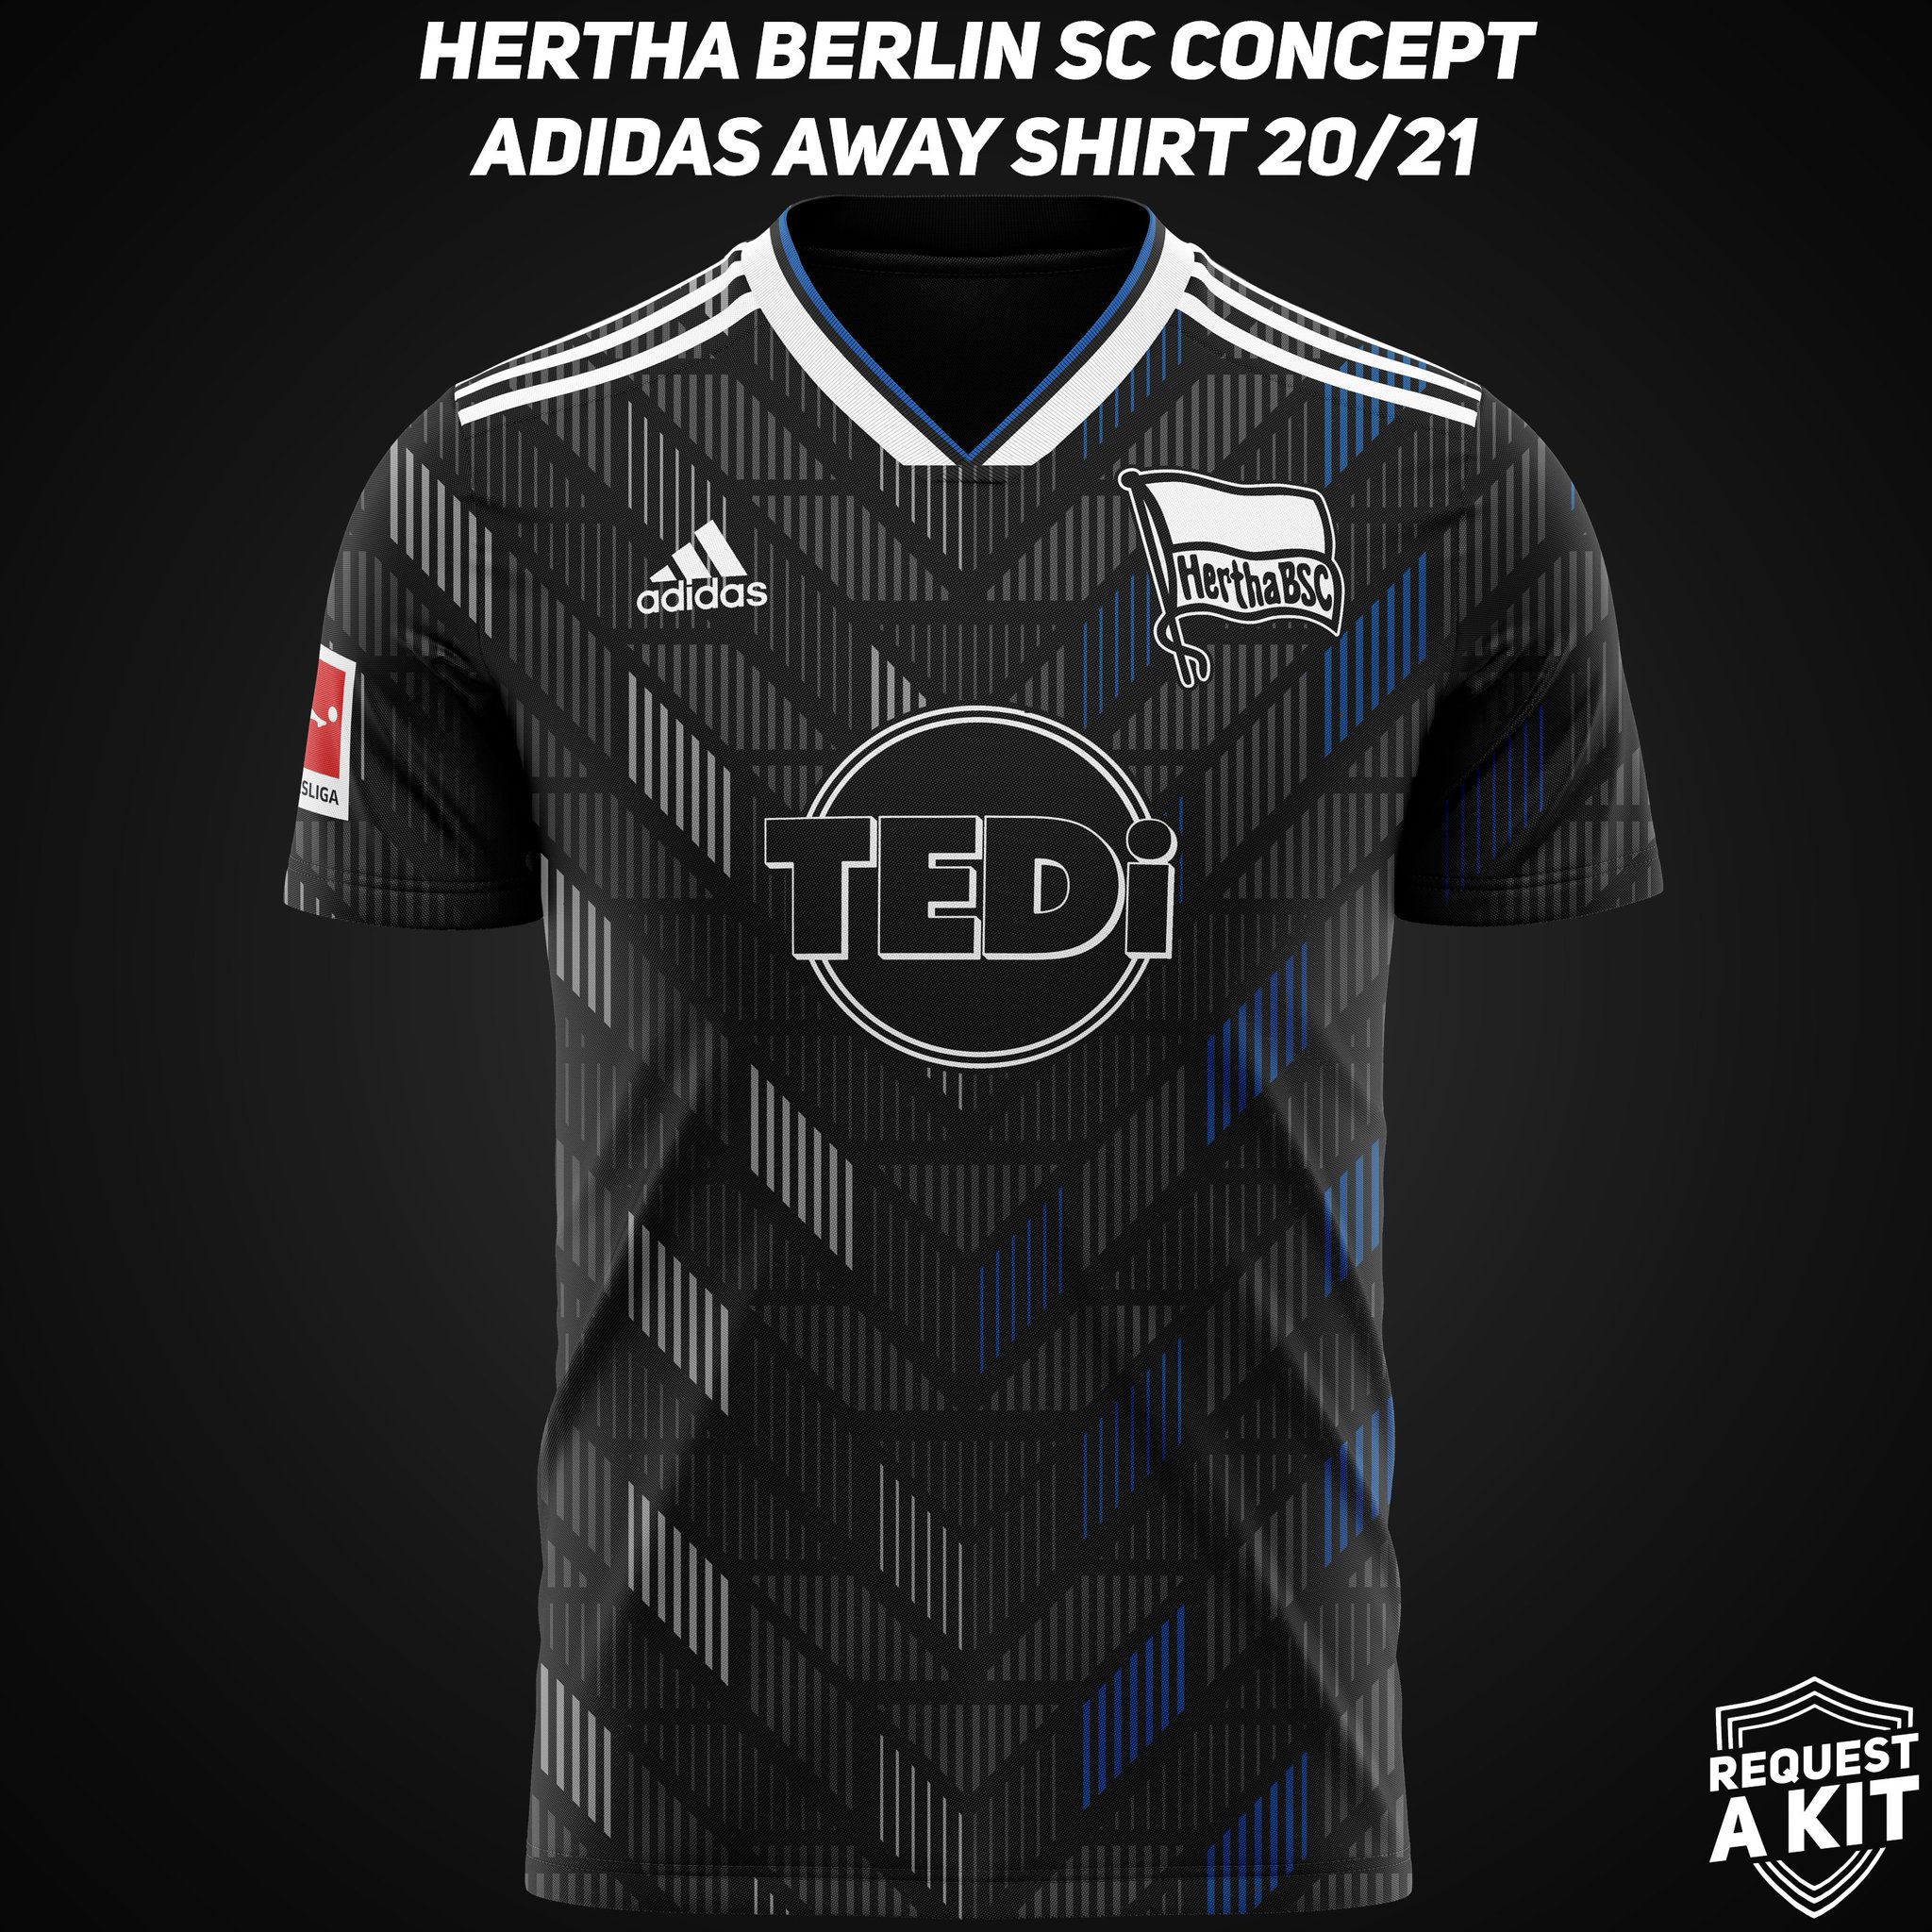 hertha berlin away kit